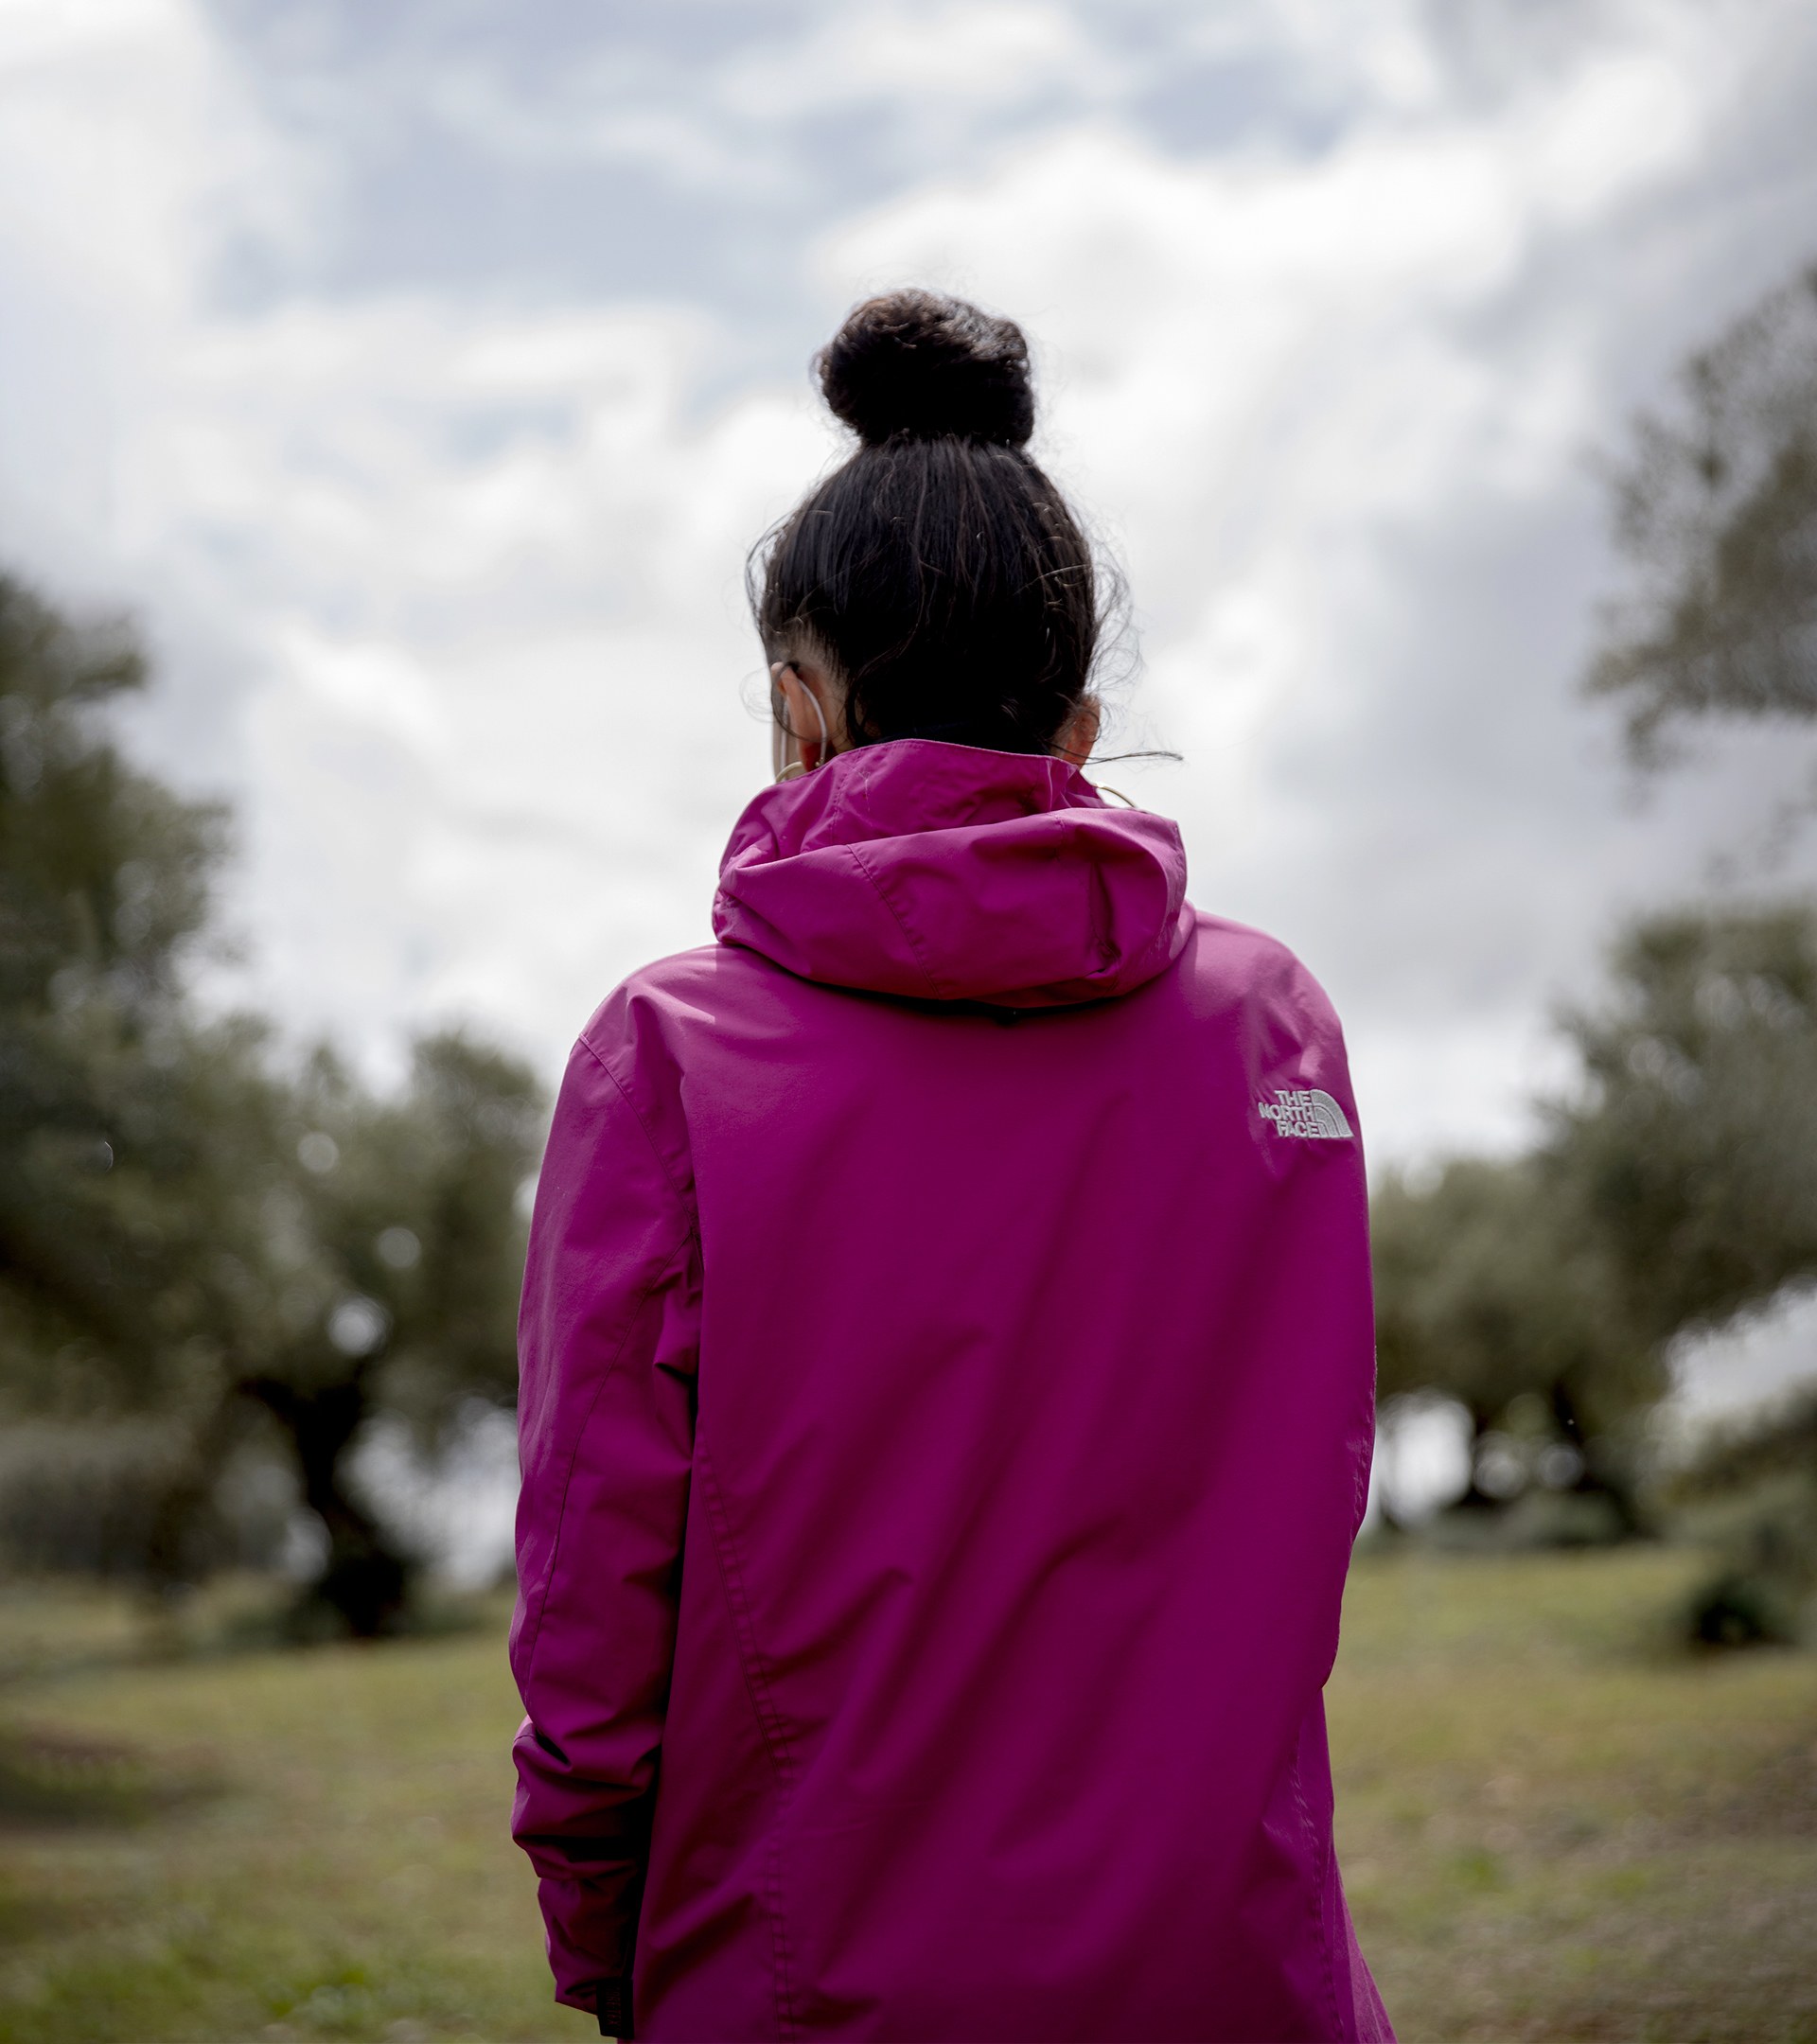 La adolescencia suicida de Mar: "Lo intenté muchas veces, sentía que debía castigarme, que no tenía derecho a nada"